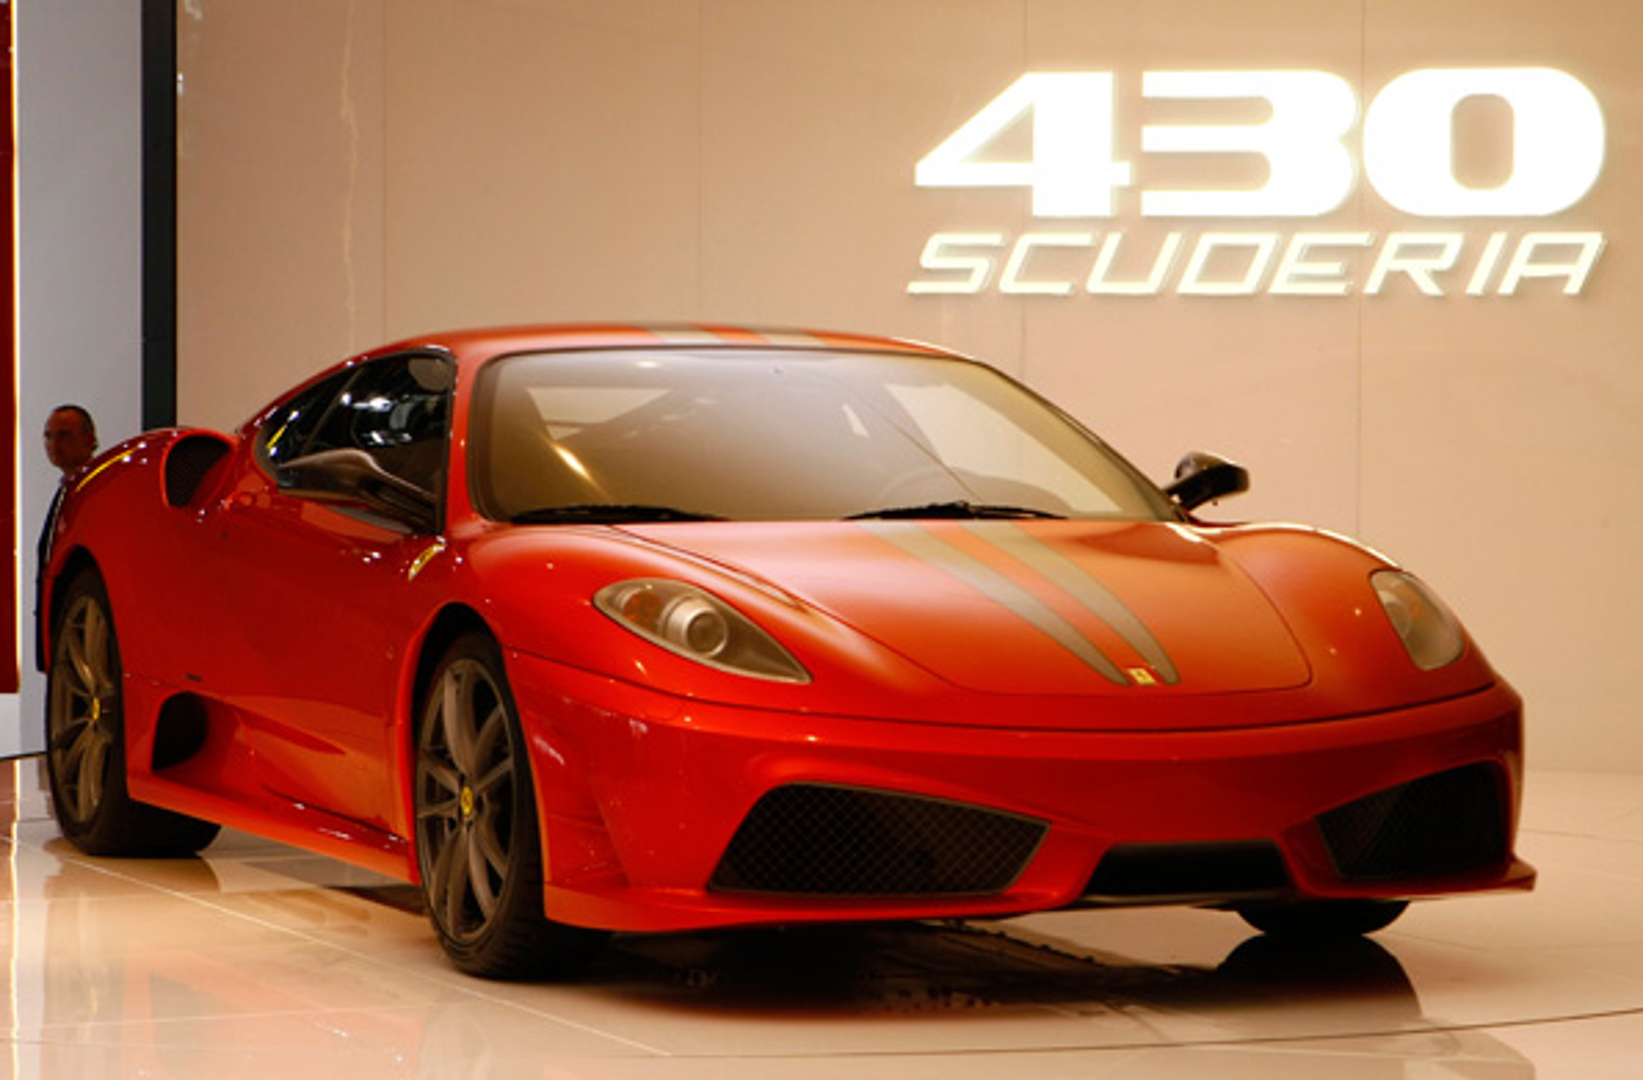 Ferrari F430 - 1.8 milijuna kuna